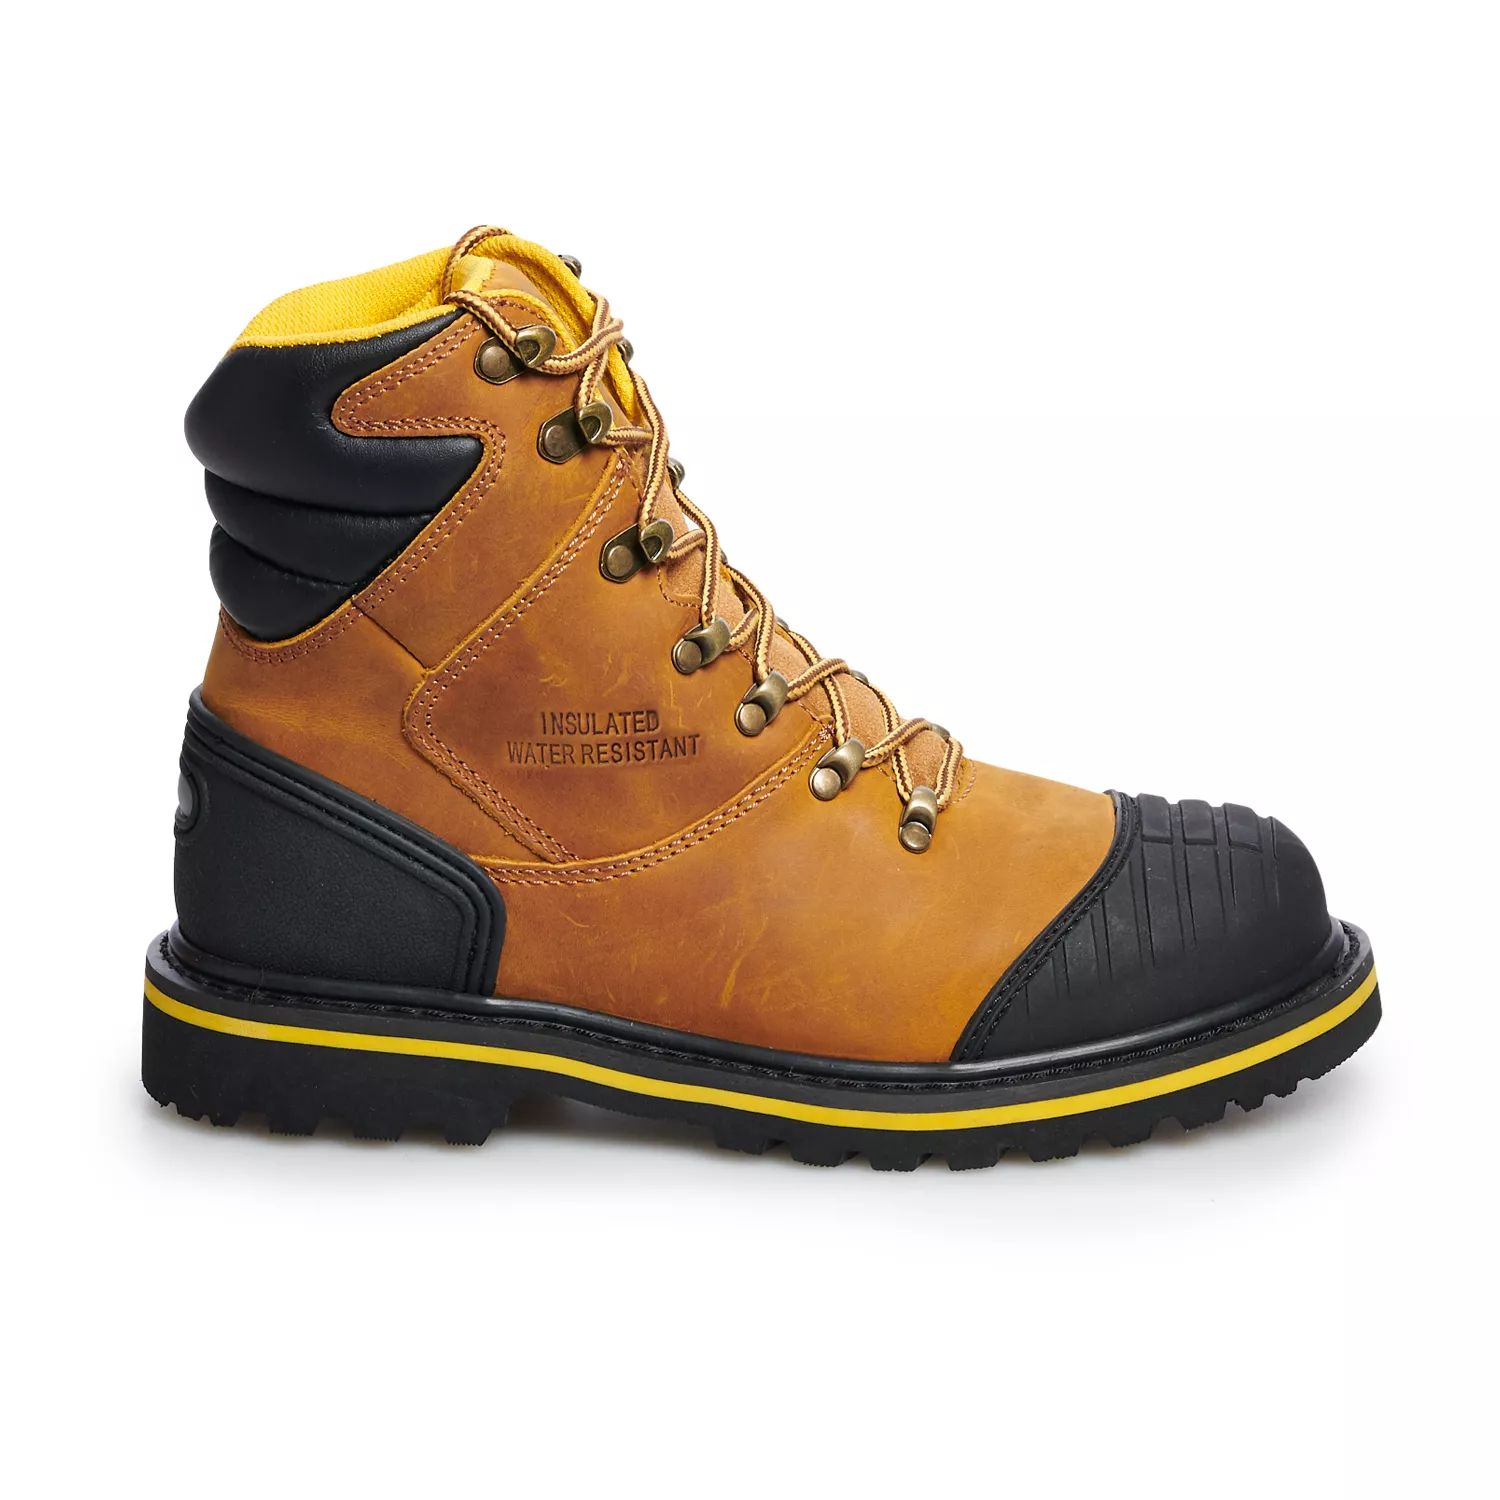 AdTec 9804 Мужские водонепроницаемые рабочие ботинки со стальным носком классические мужские рабочие ботинки adtec со стальным носком